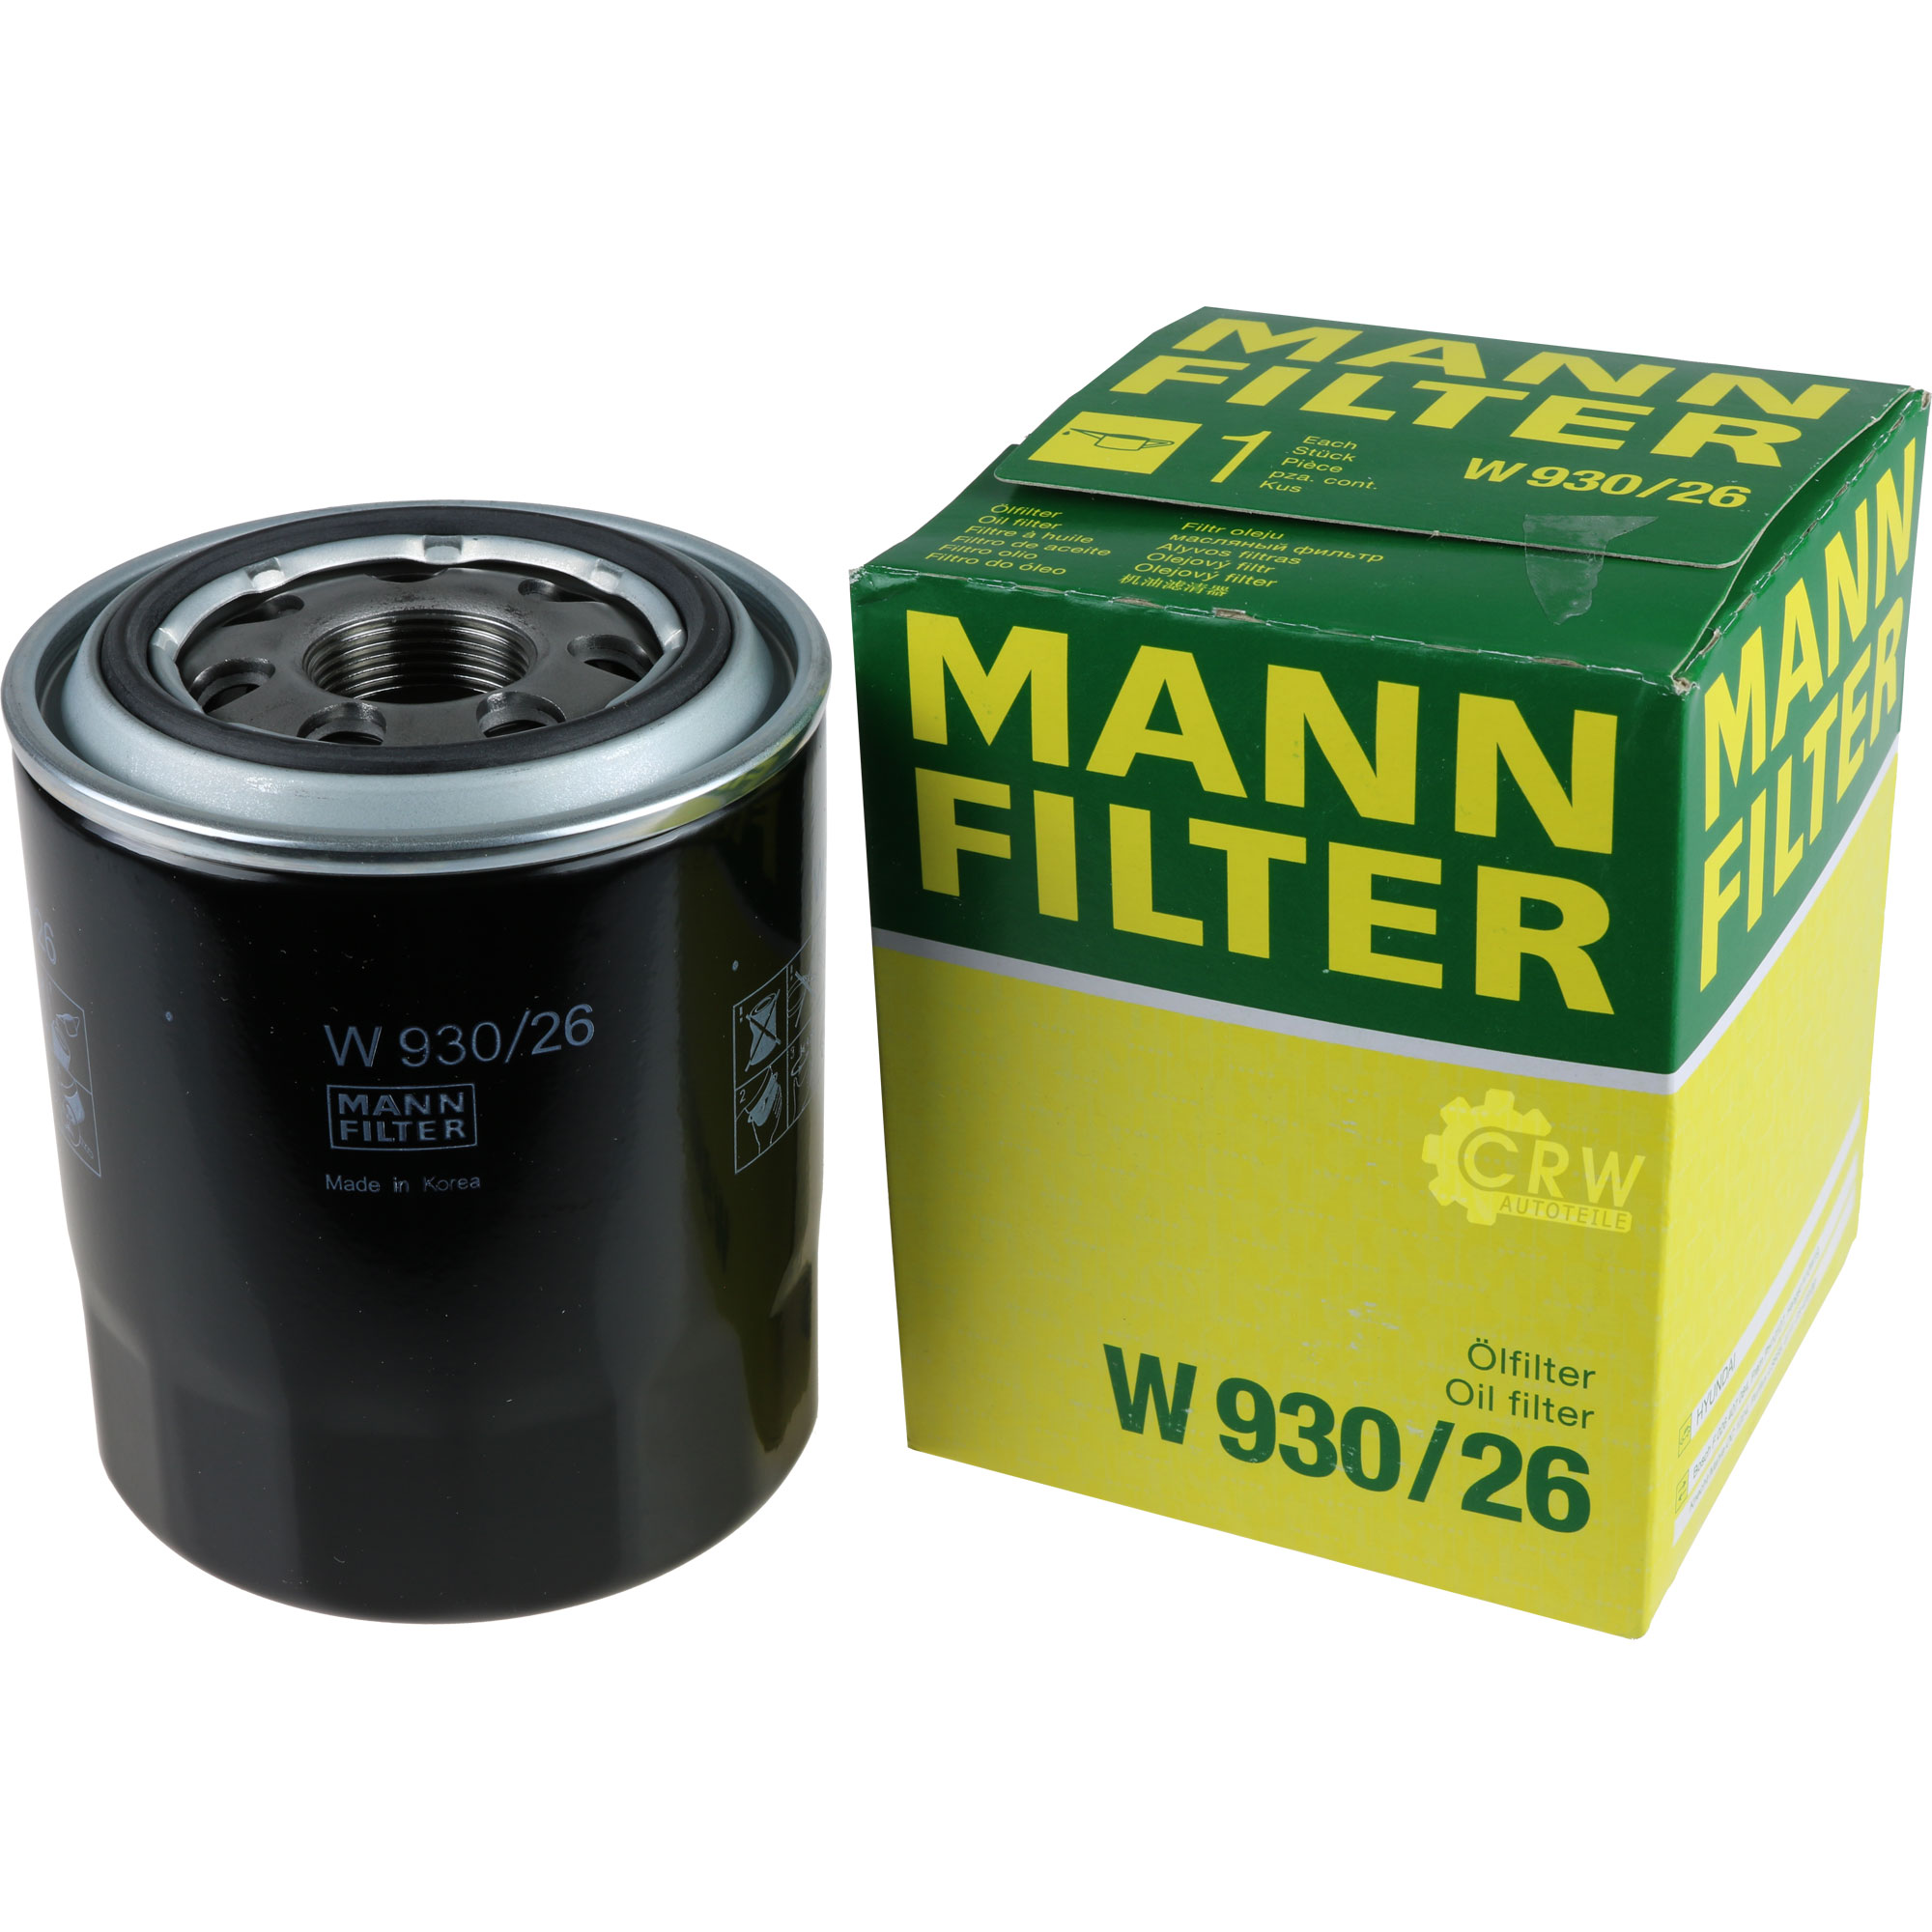 MANN-FILTER Ölfilter W 930/26 Oil Filter